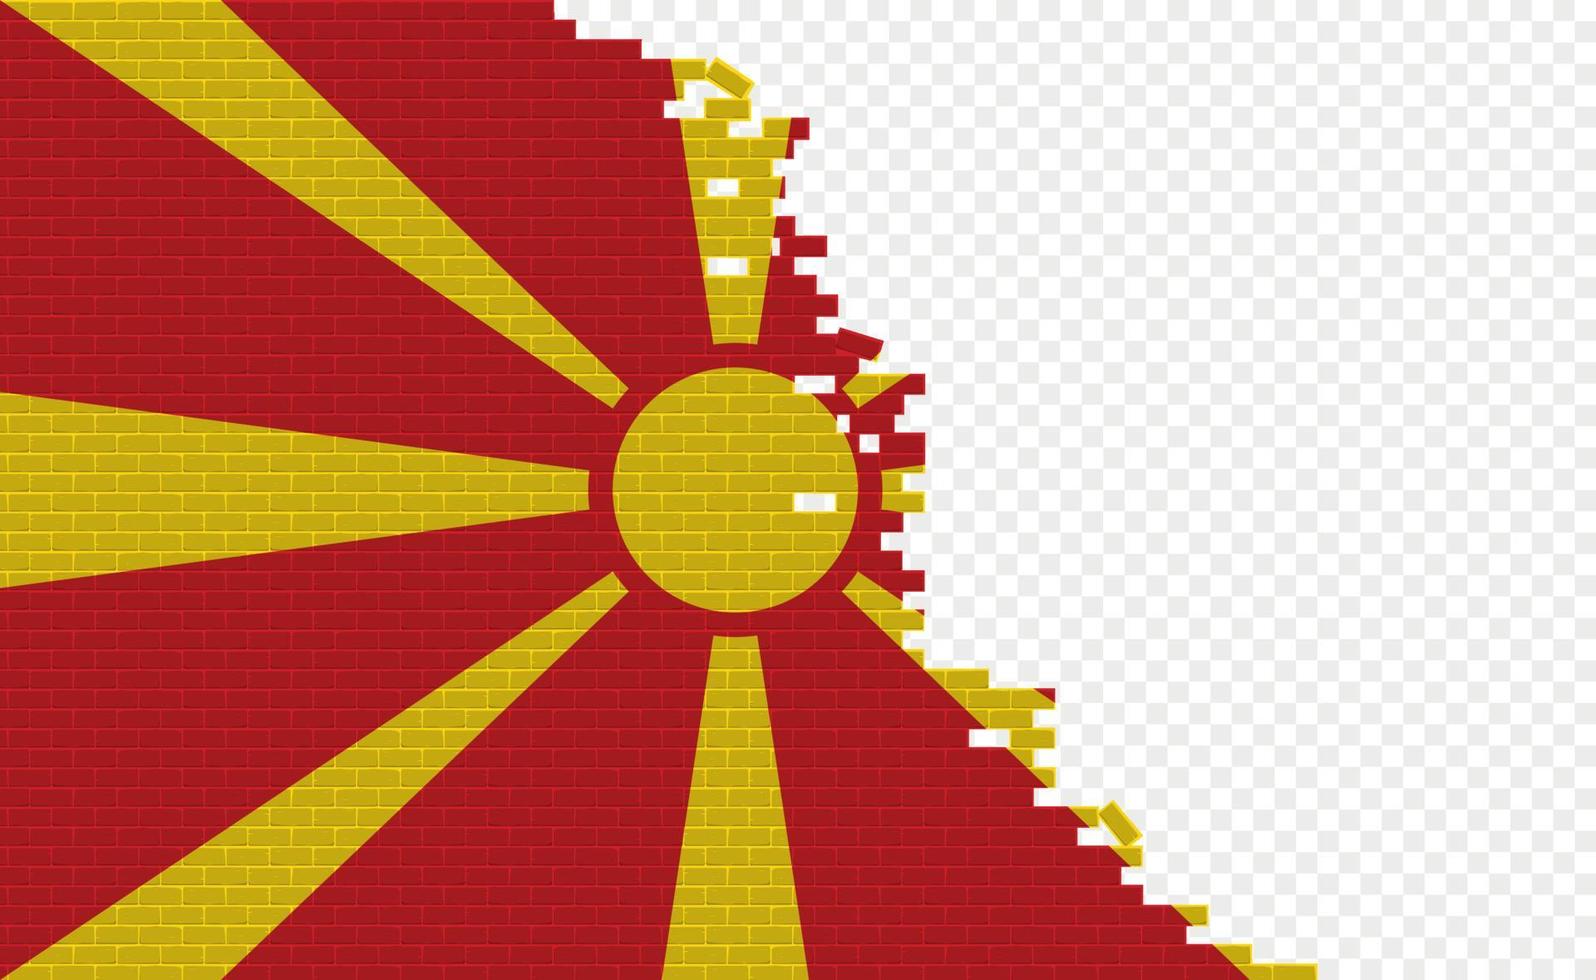 bandera de macedonia en la pared de ladrillos rotos. campo de bandera vacío de otro país. comparación de países. fácil edición y vector en grupos.